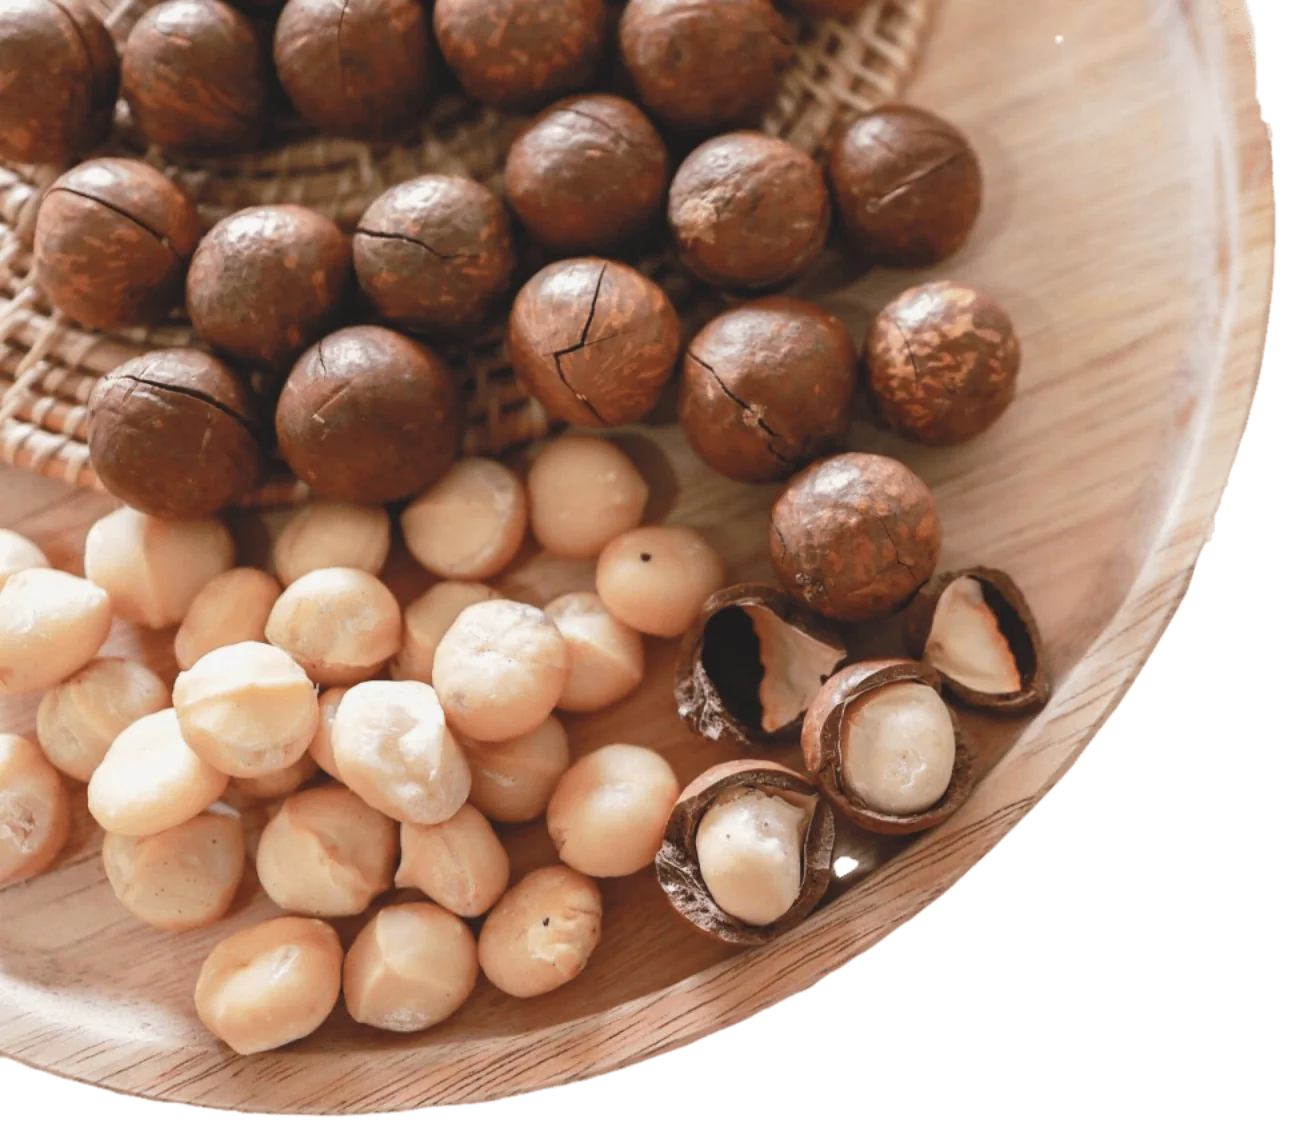 Wholesale Organic Hazelnuts